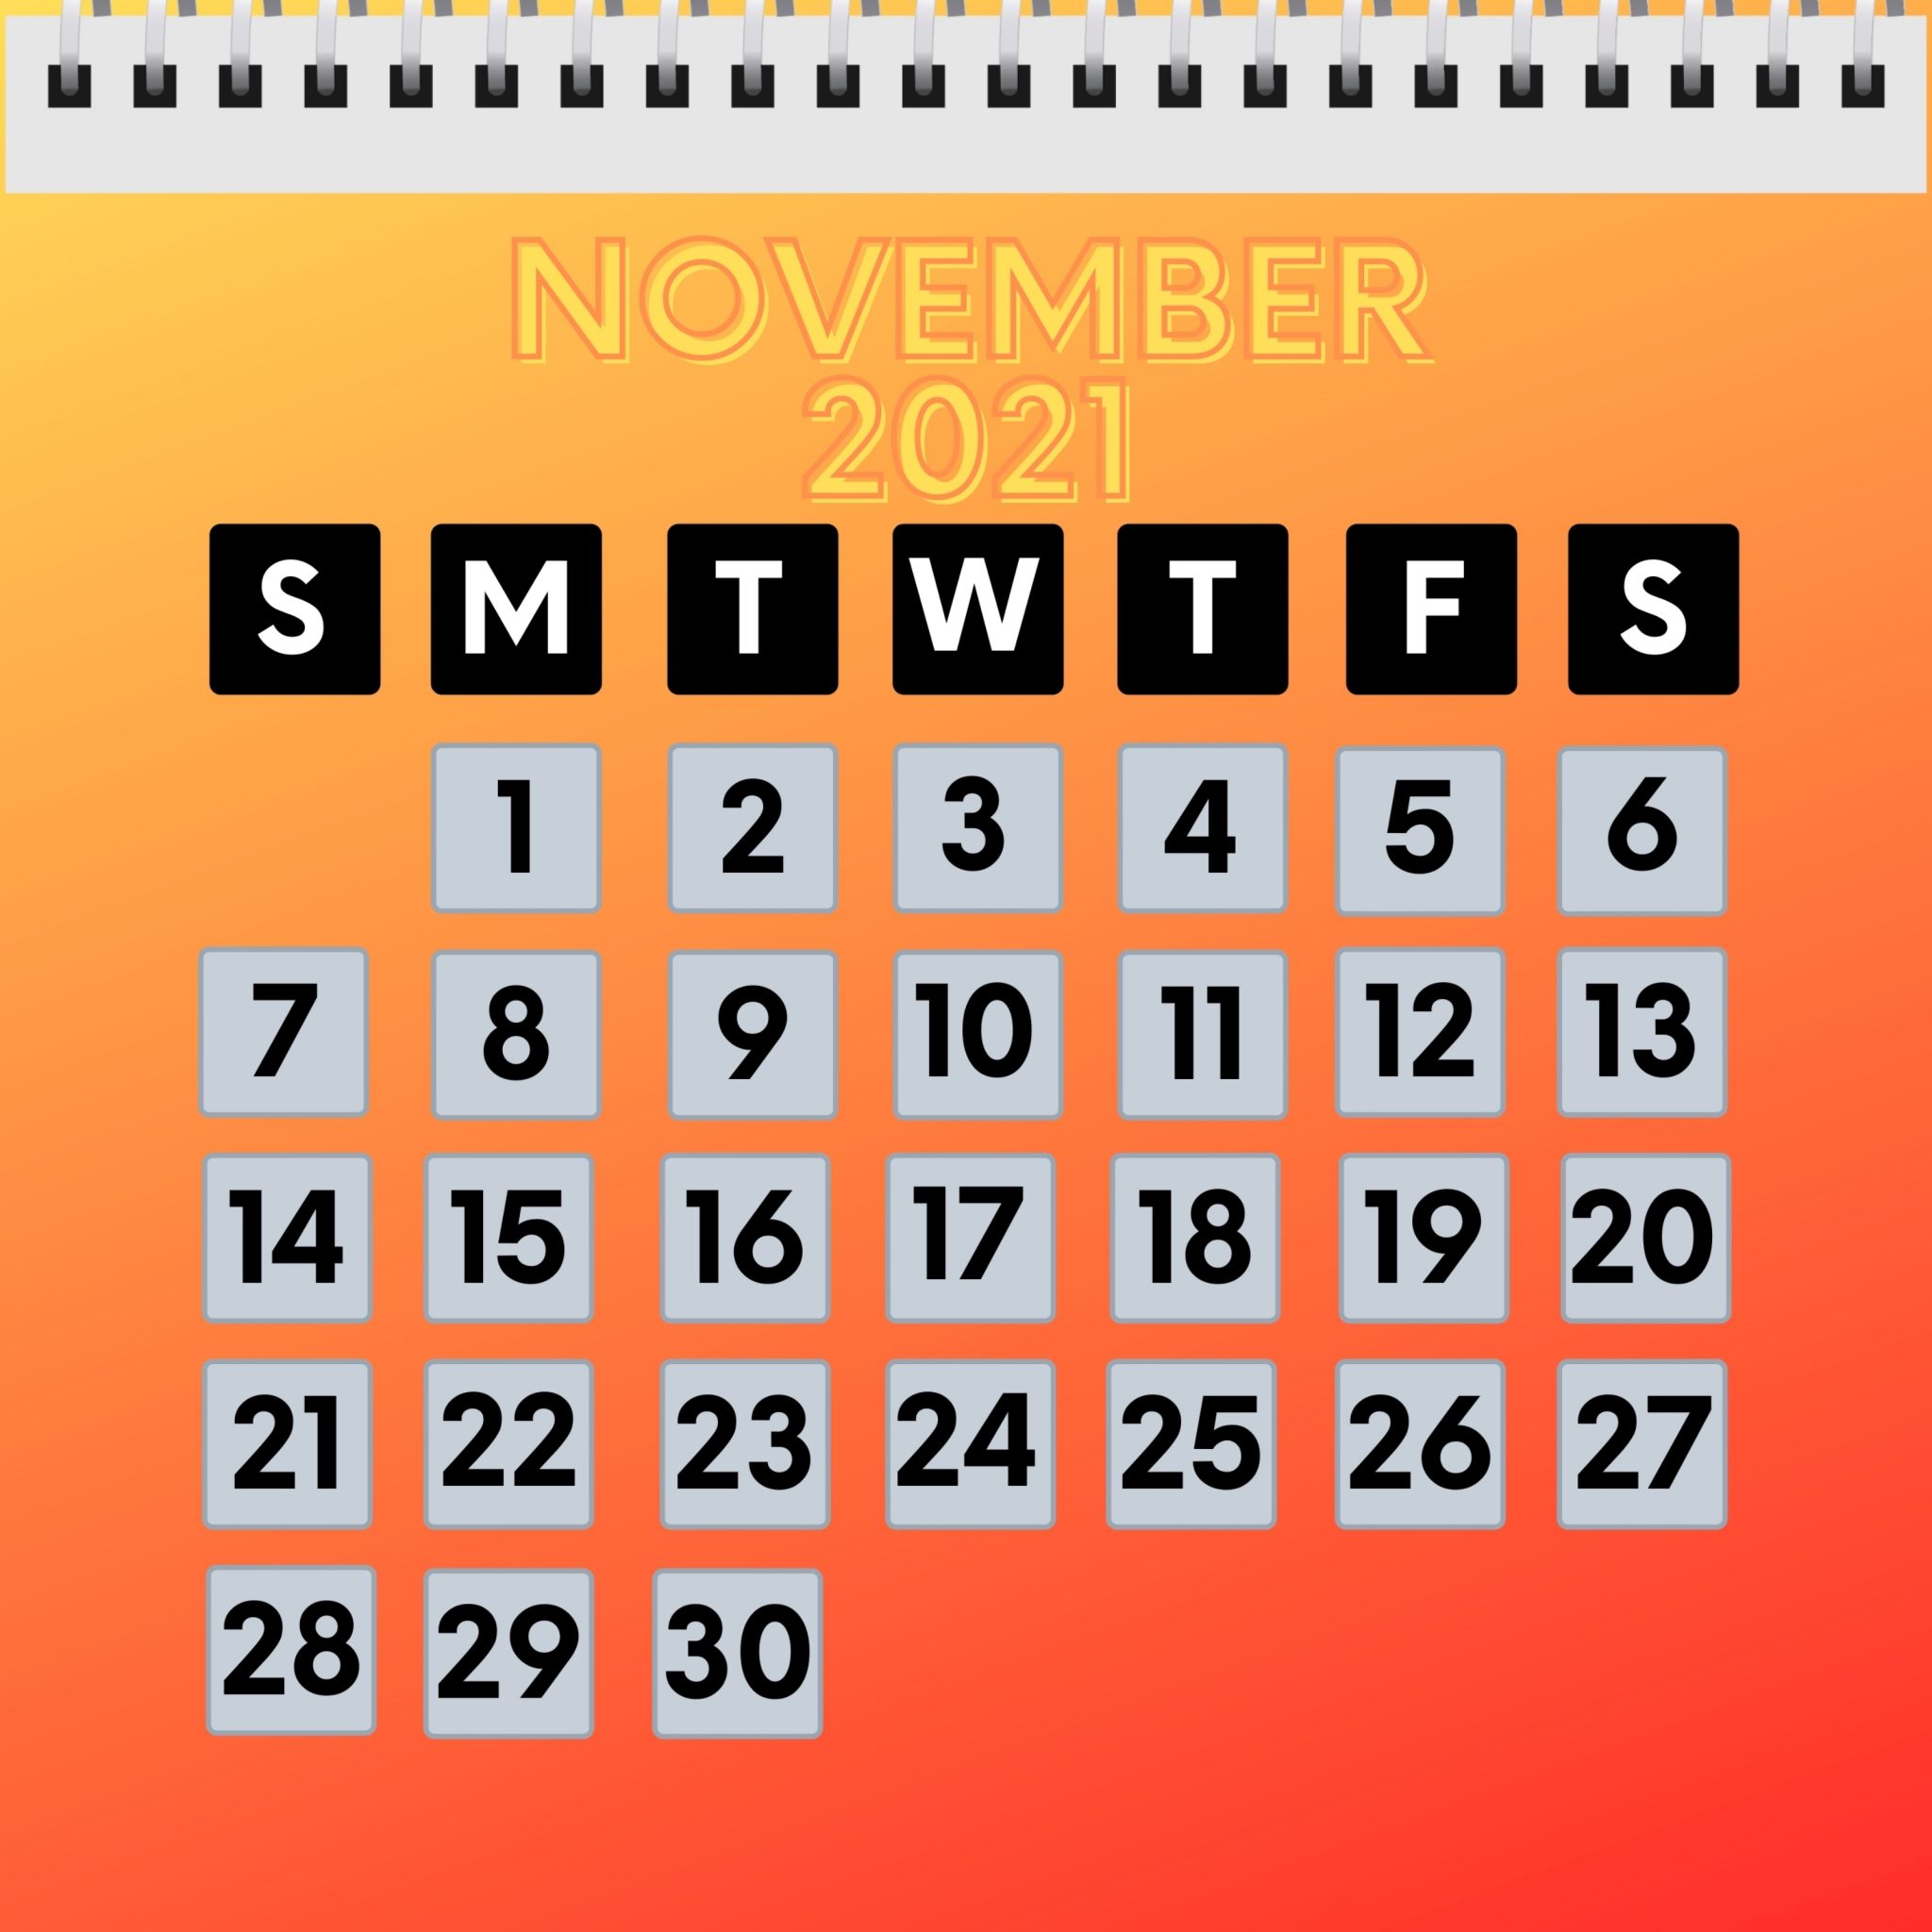 2048x2048 wallpapers iPad retina November 2021 Calendar iPad Wallpaper 2048x2048 pixels resolution